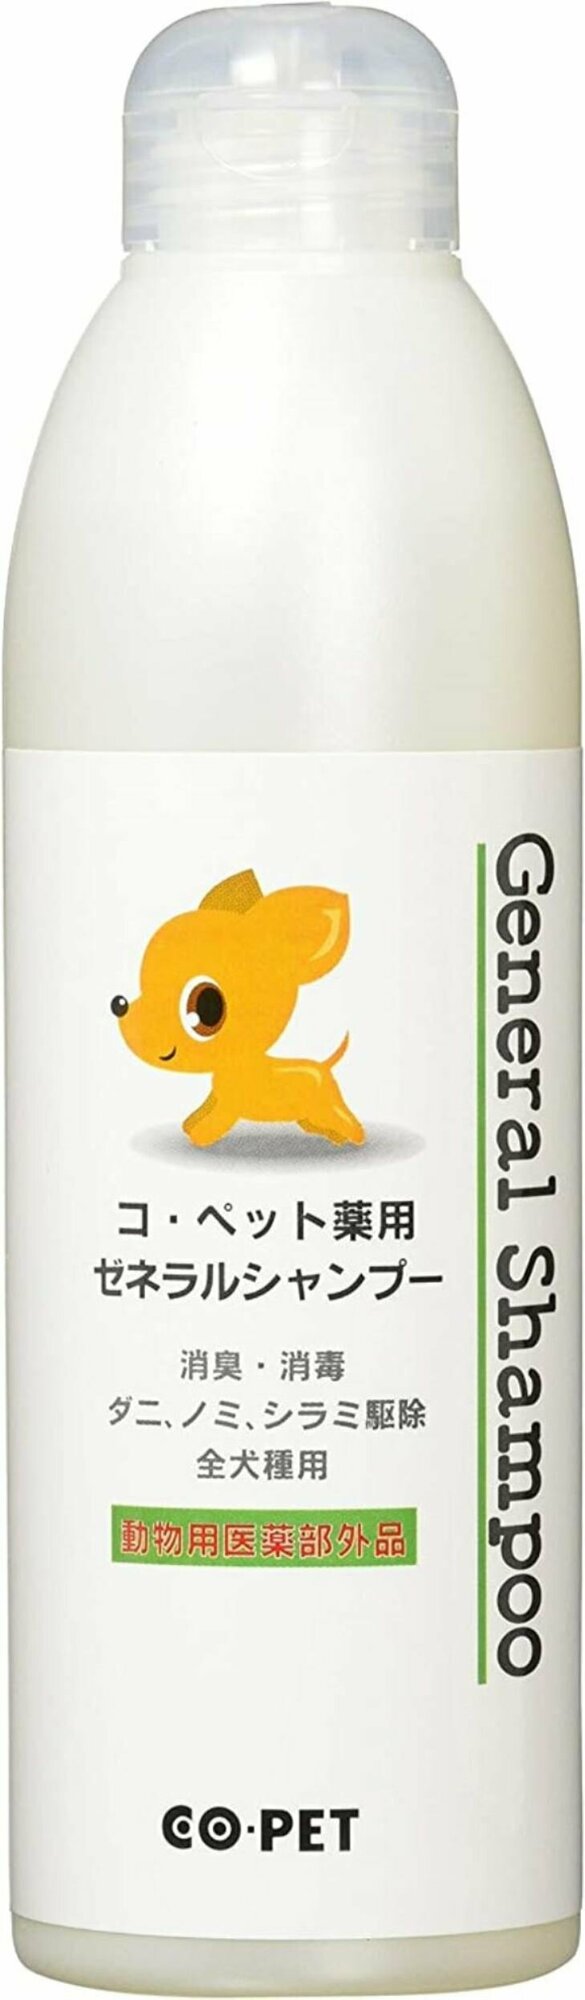 Шампунь для собак Japan Premium Pet мягкий лечебный на основе водорастворимой серы . CO PET, 300 мл